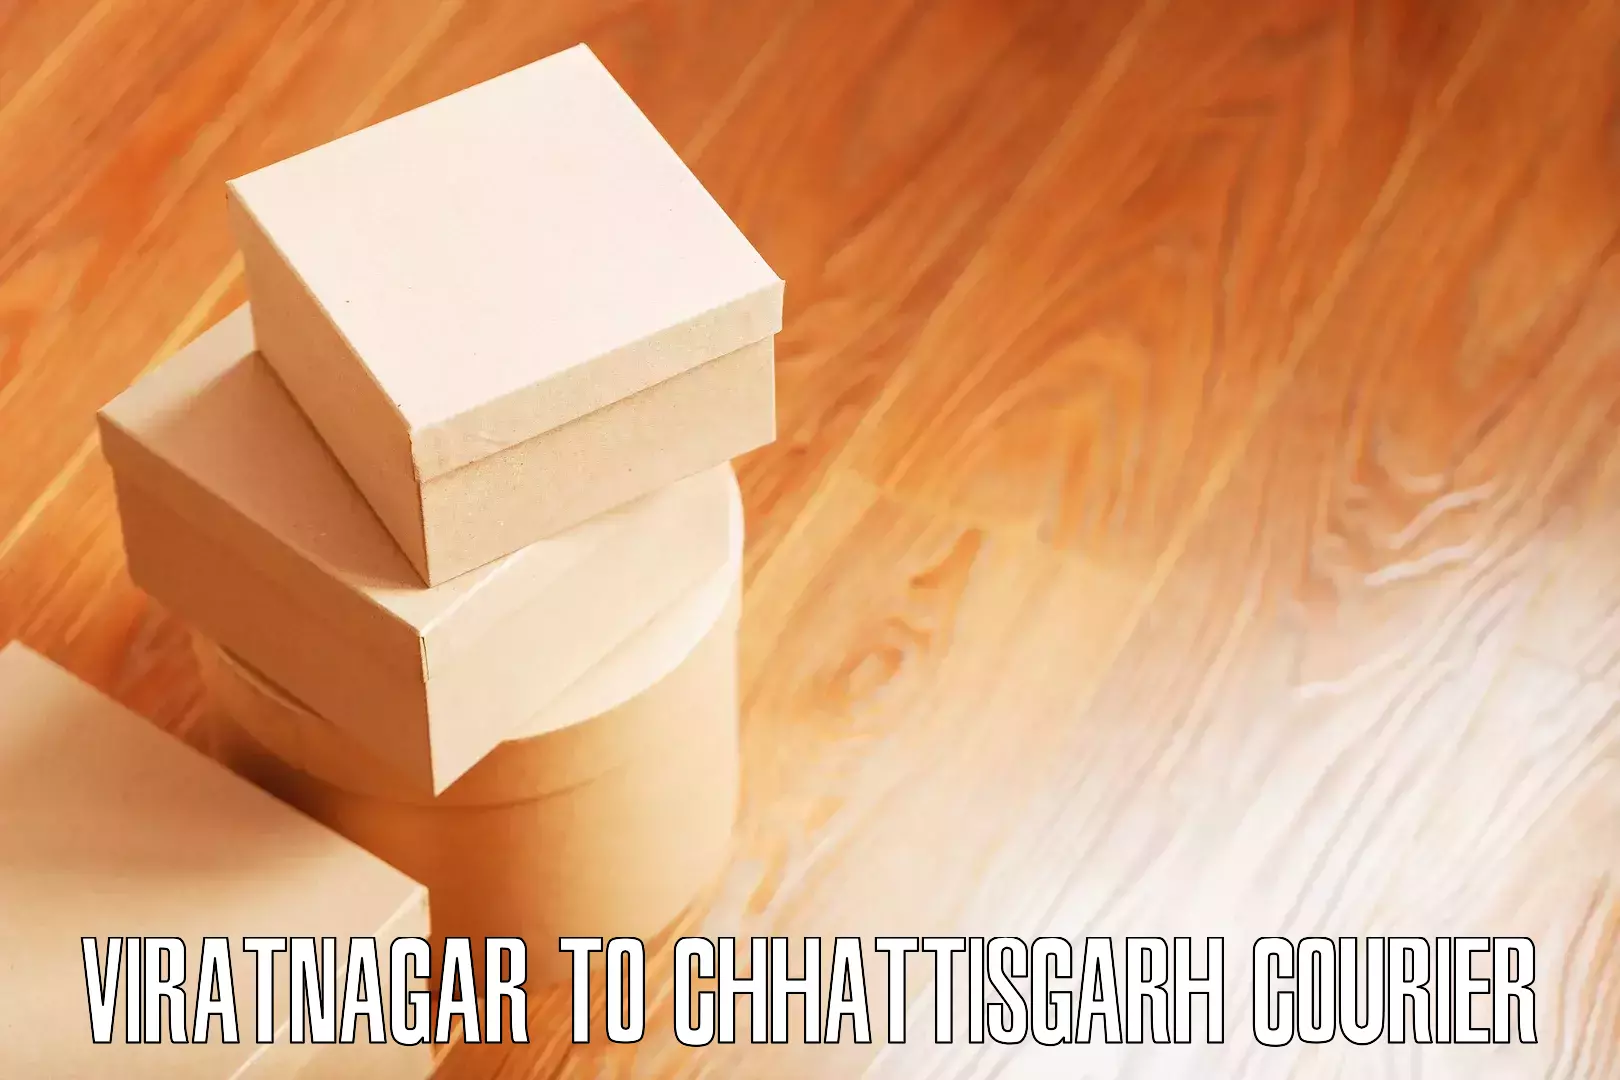 Furniture moving services Viratnagar to Patan Durg